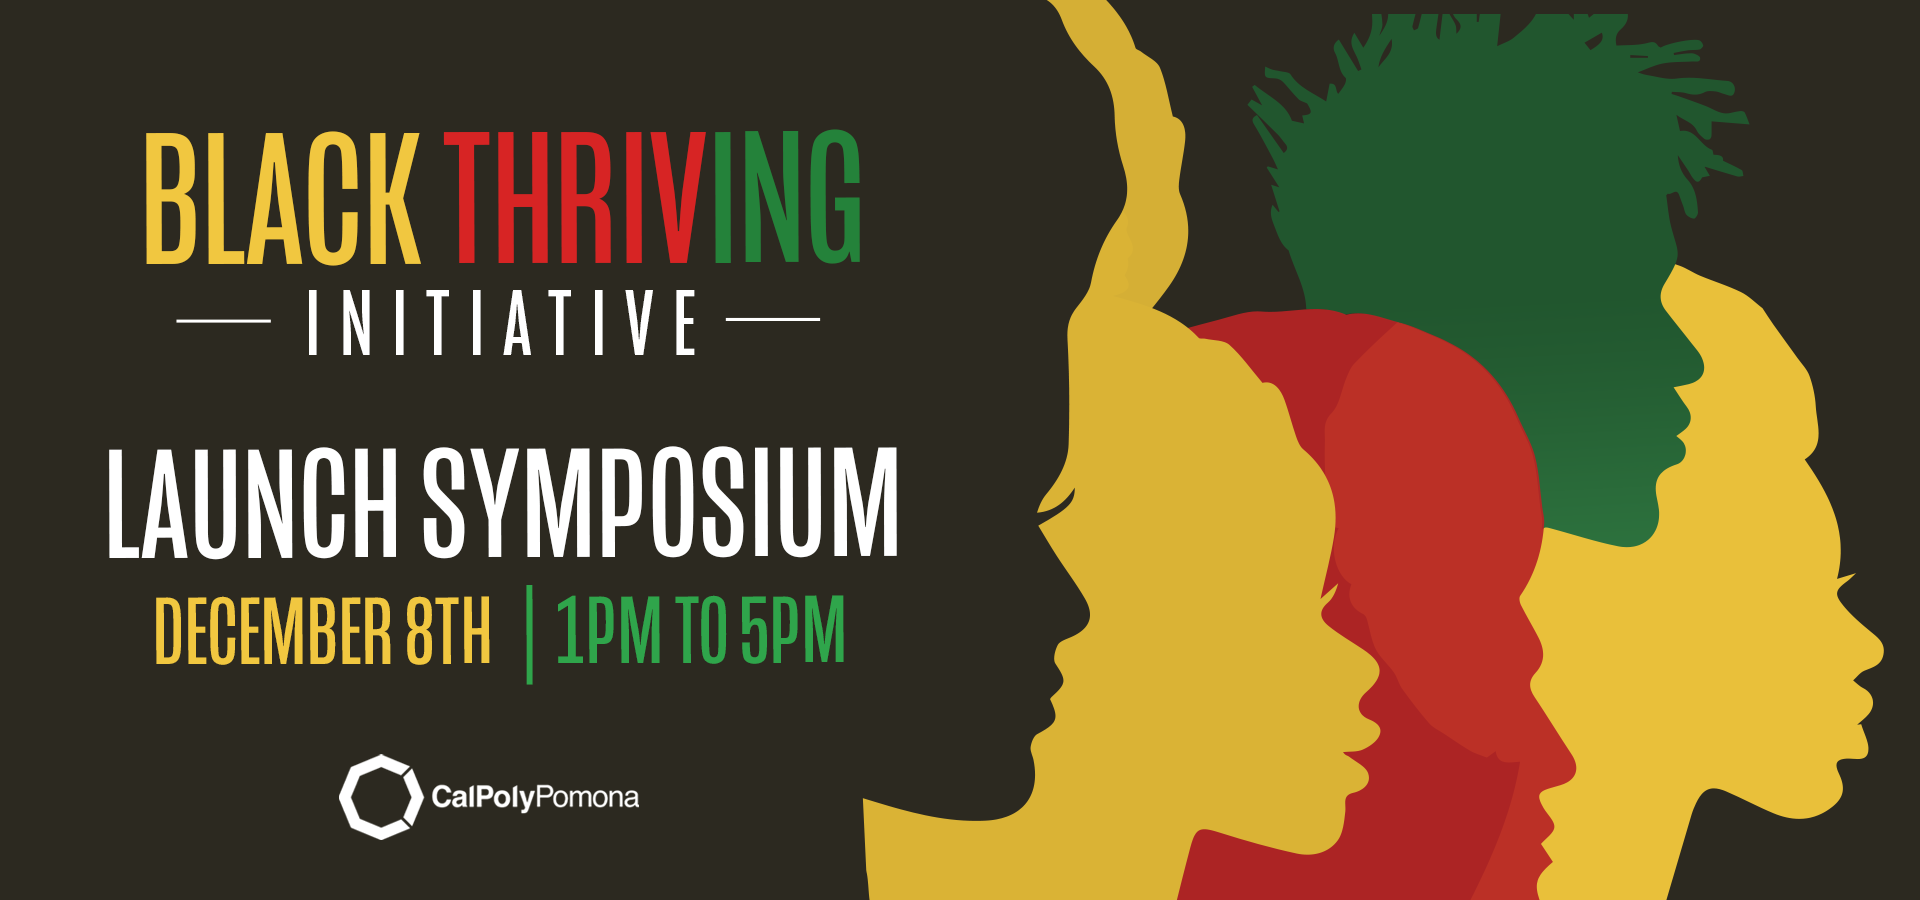 Black Thriving Initiative Launch Symposium